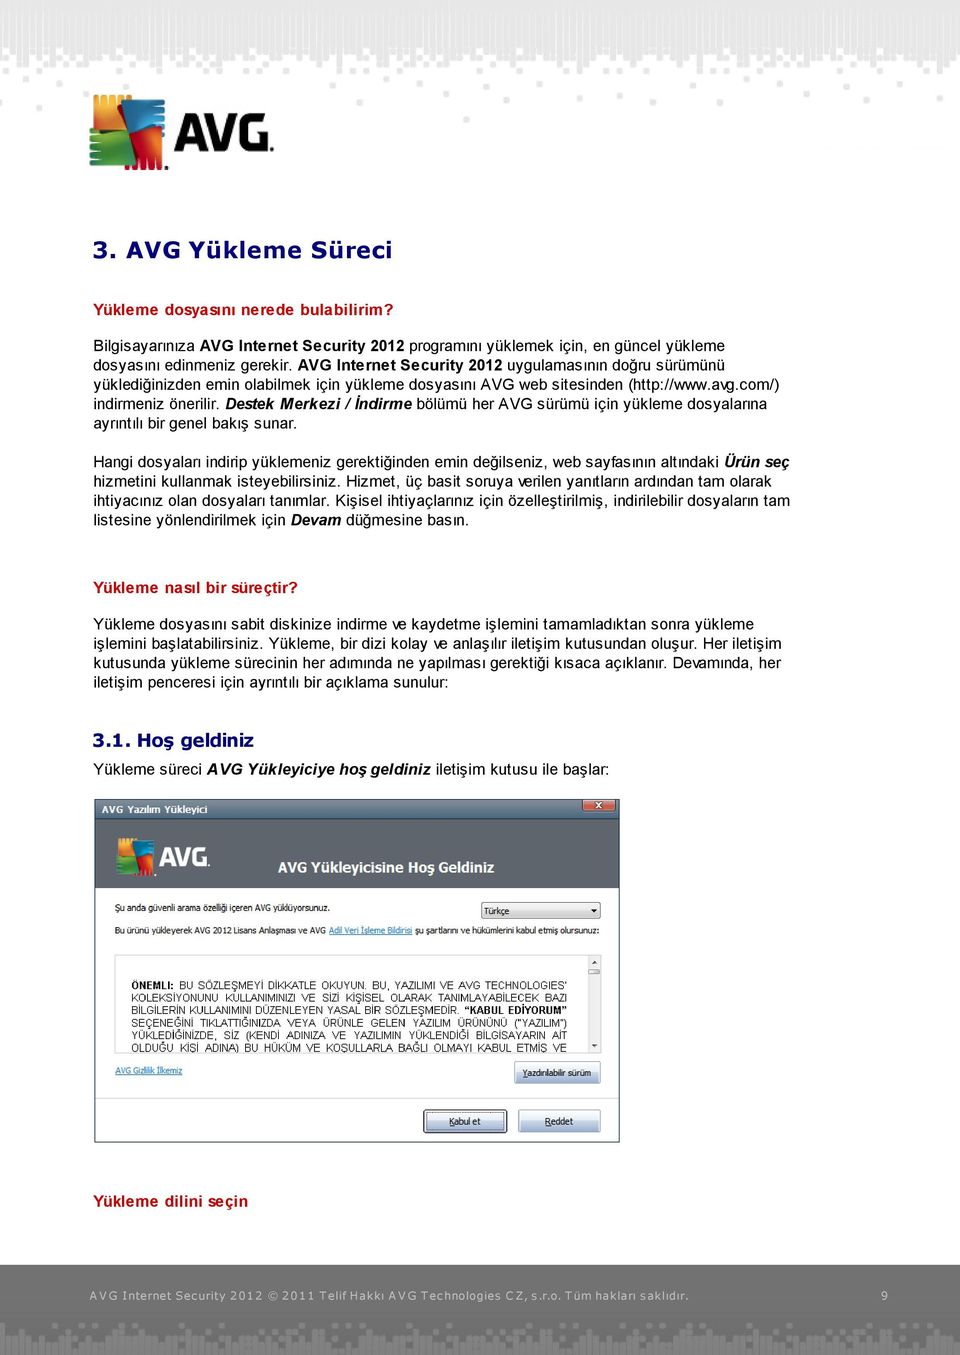 Destek Merkezi / İndirme bölümü her AVG sürümü için yükleme dosyalarına ayrıntılı bir genel bakış sunar.